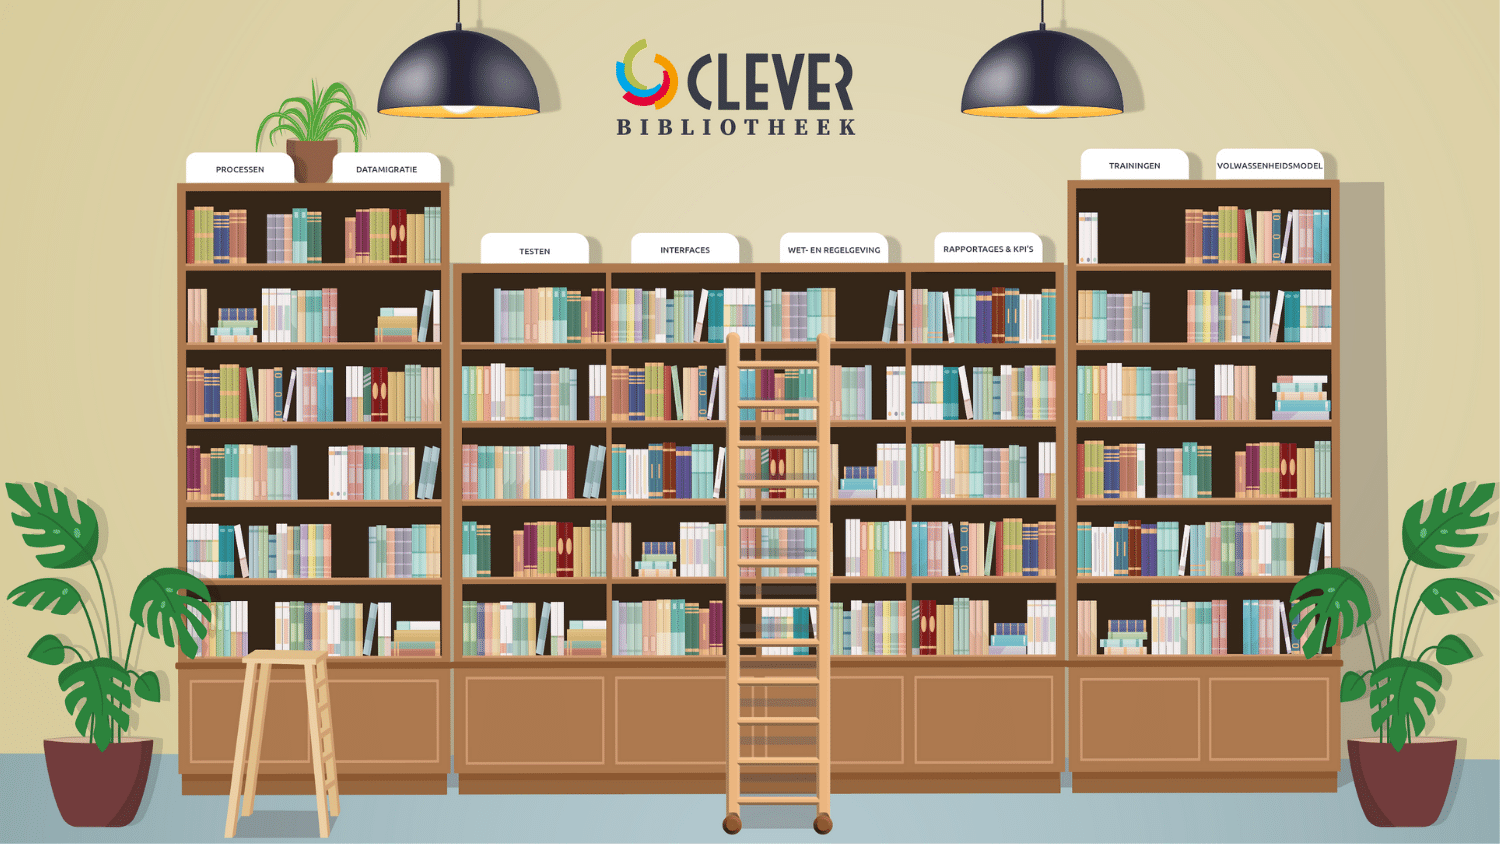 De Clever Bibliotheek